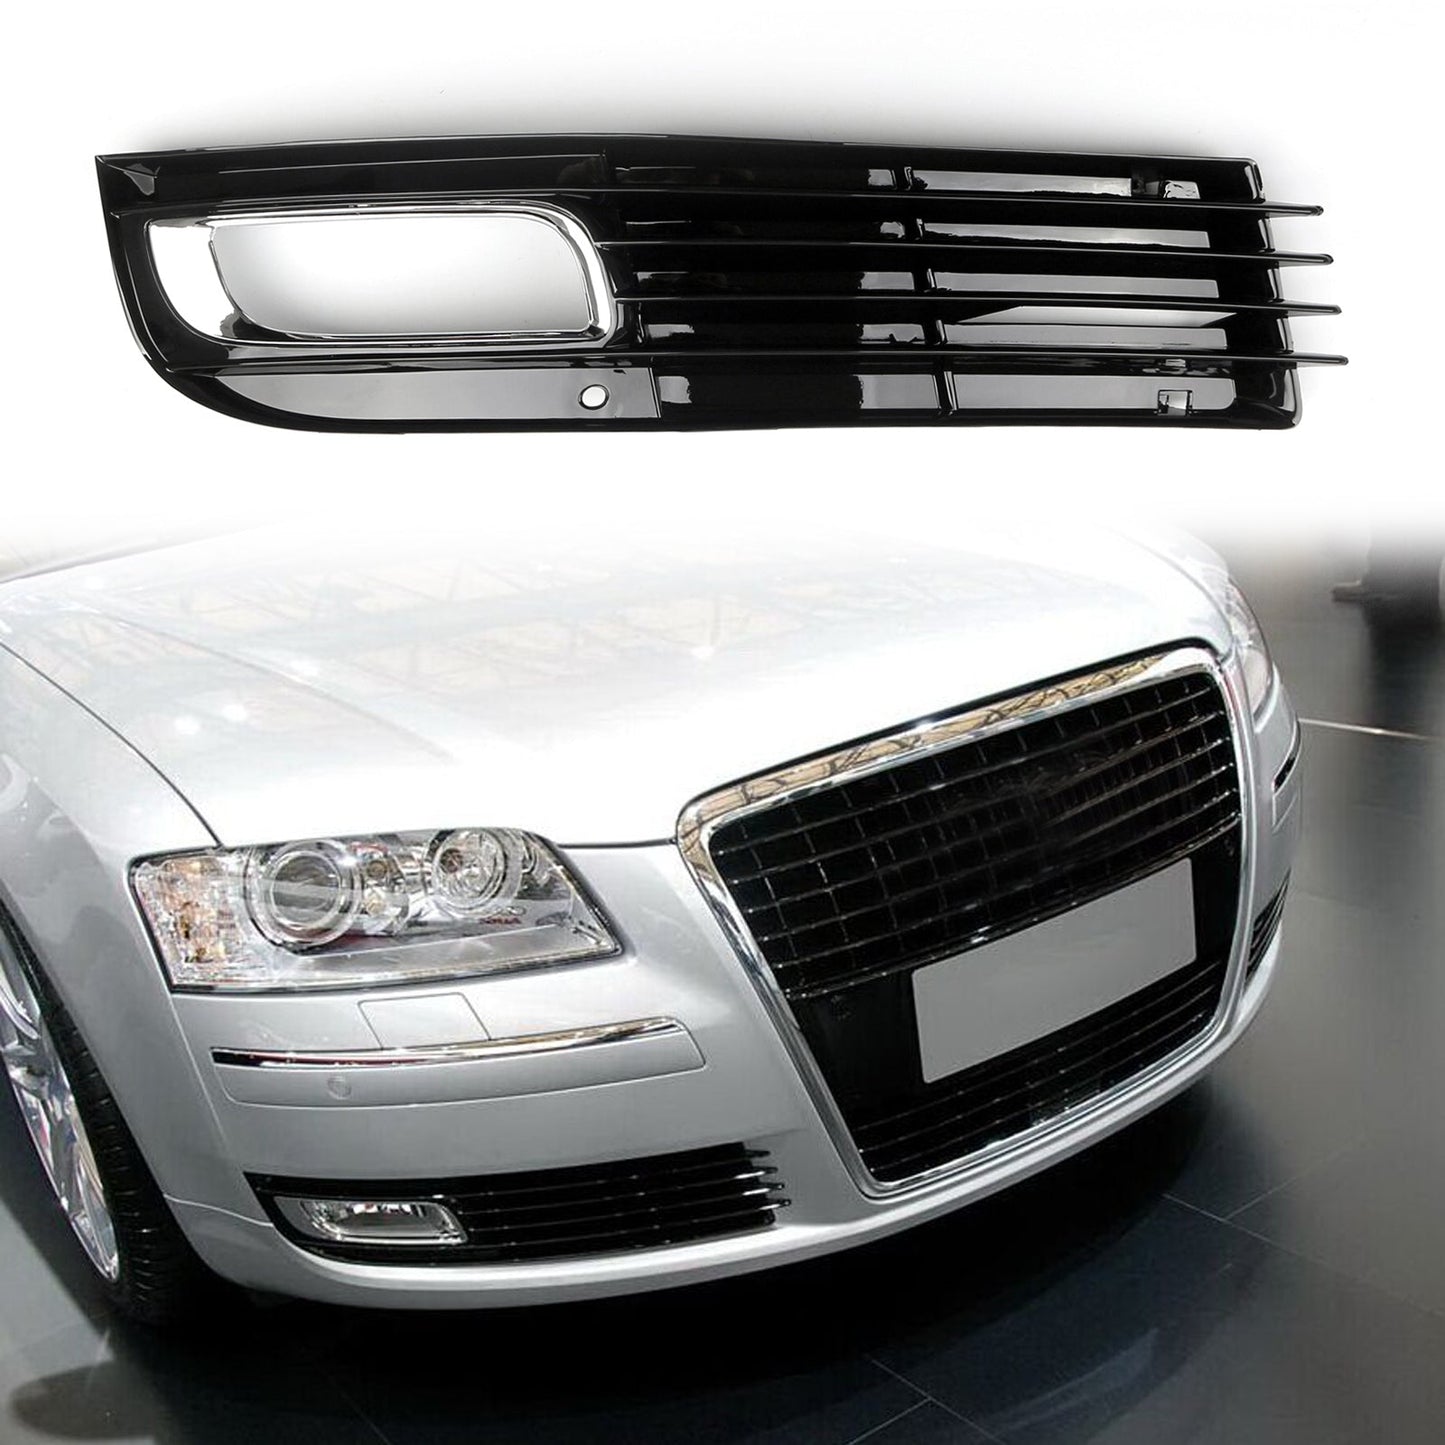 Grille antibrouillard de calandre de pare-chocs inférieure de voiture en ABS avec placage chromé pour Audi A8 D3 (08-10) Générique